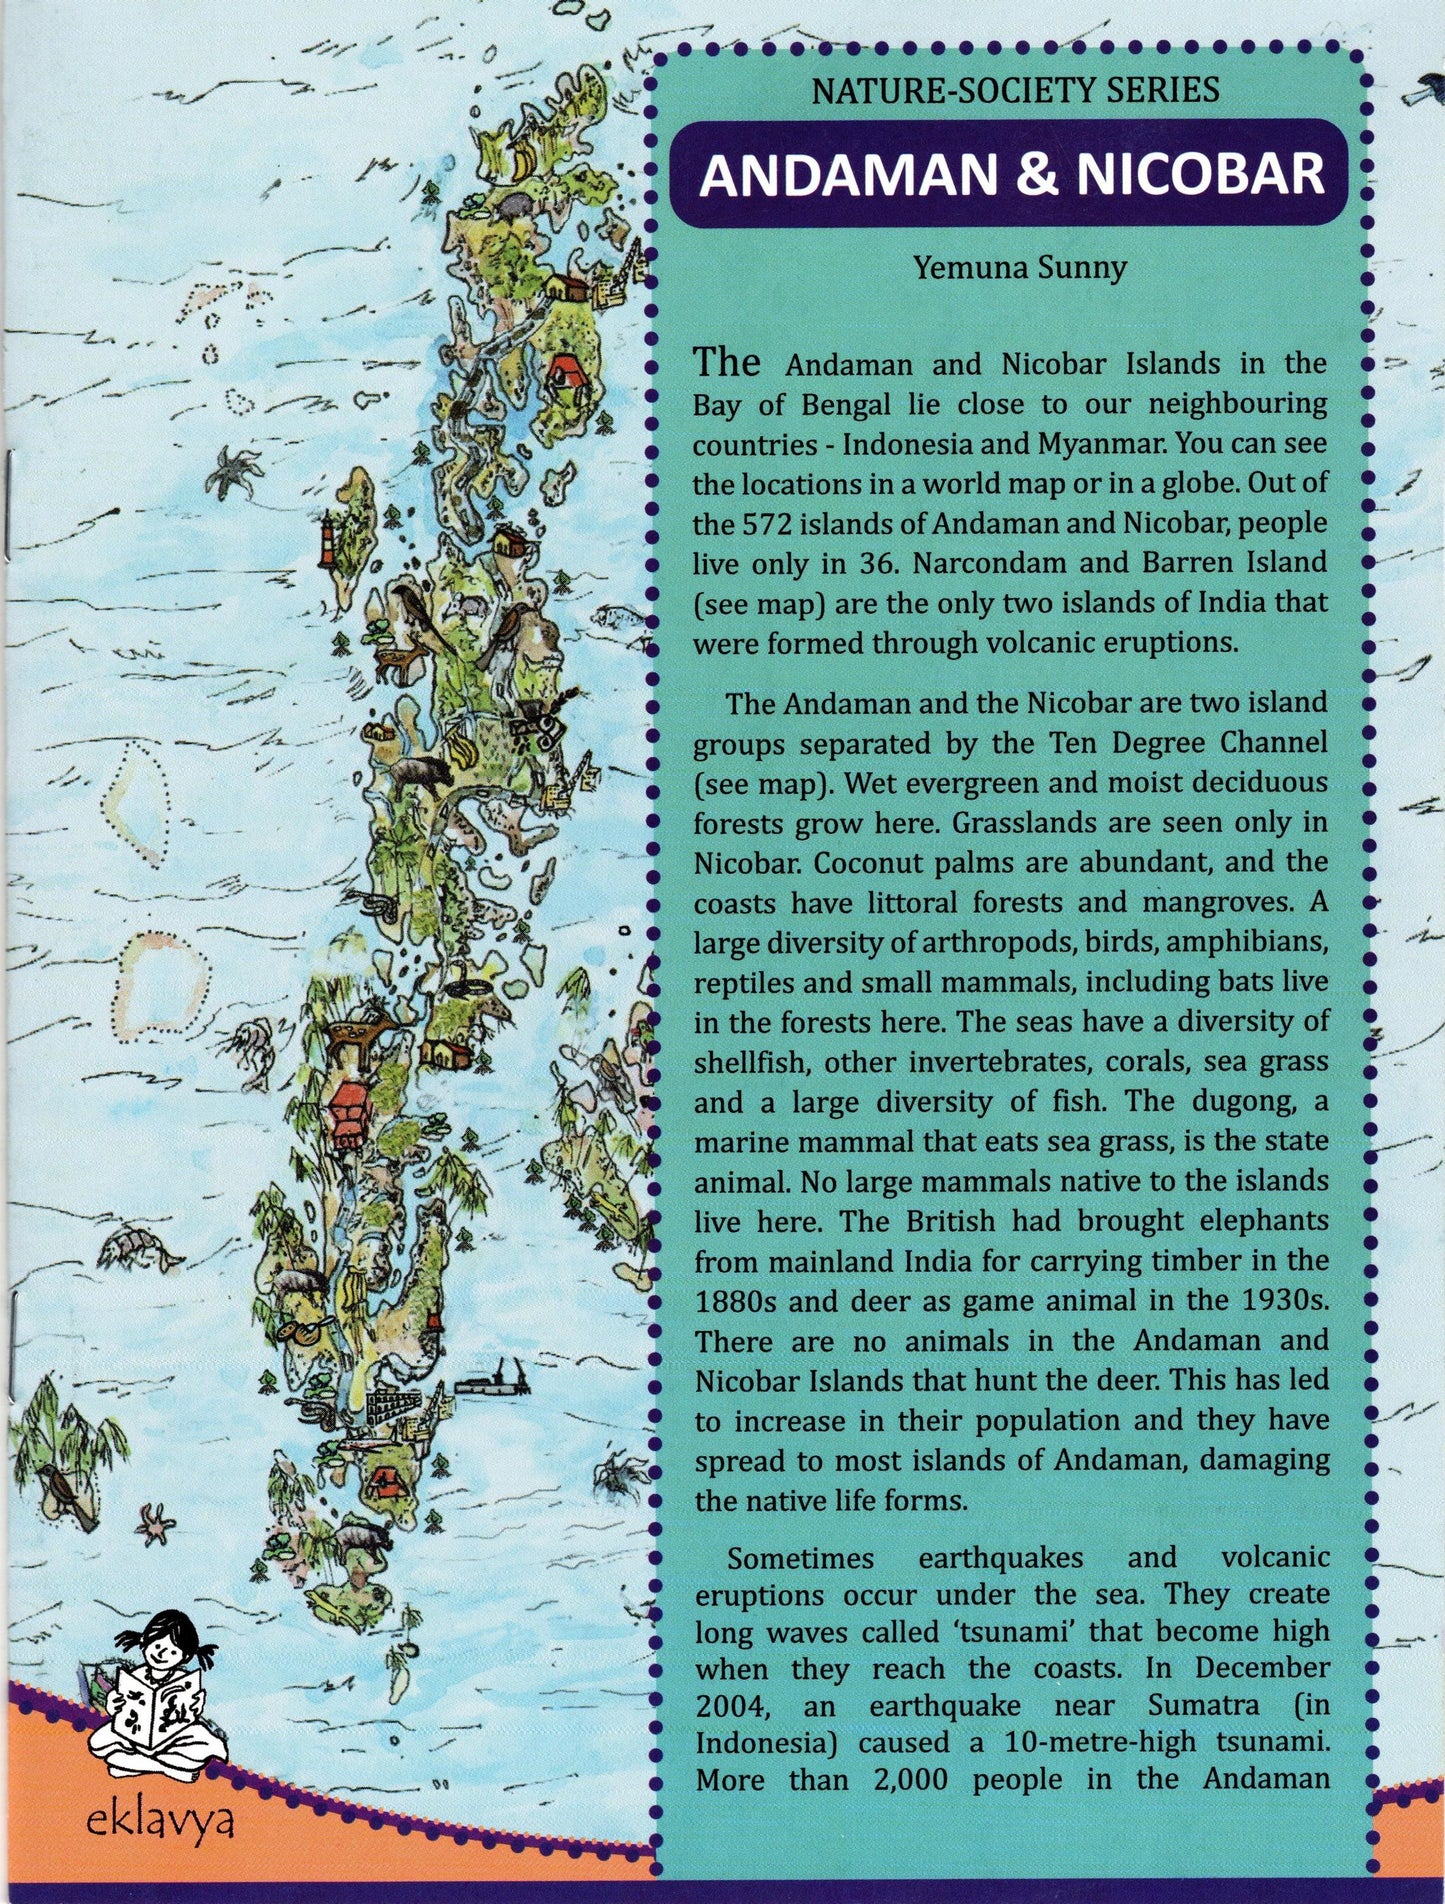 Nature-Society Series: Andaman and Nicobar Islands